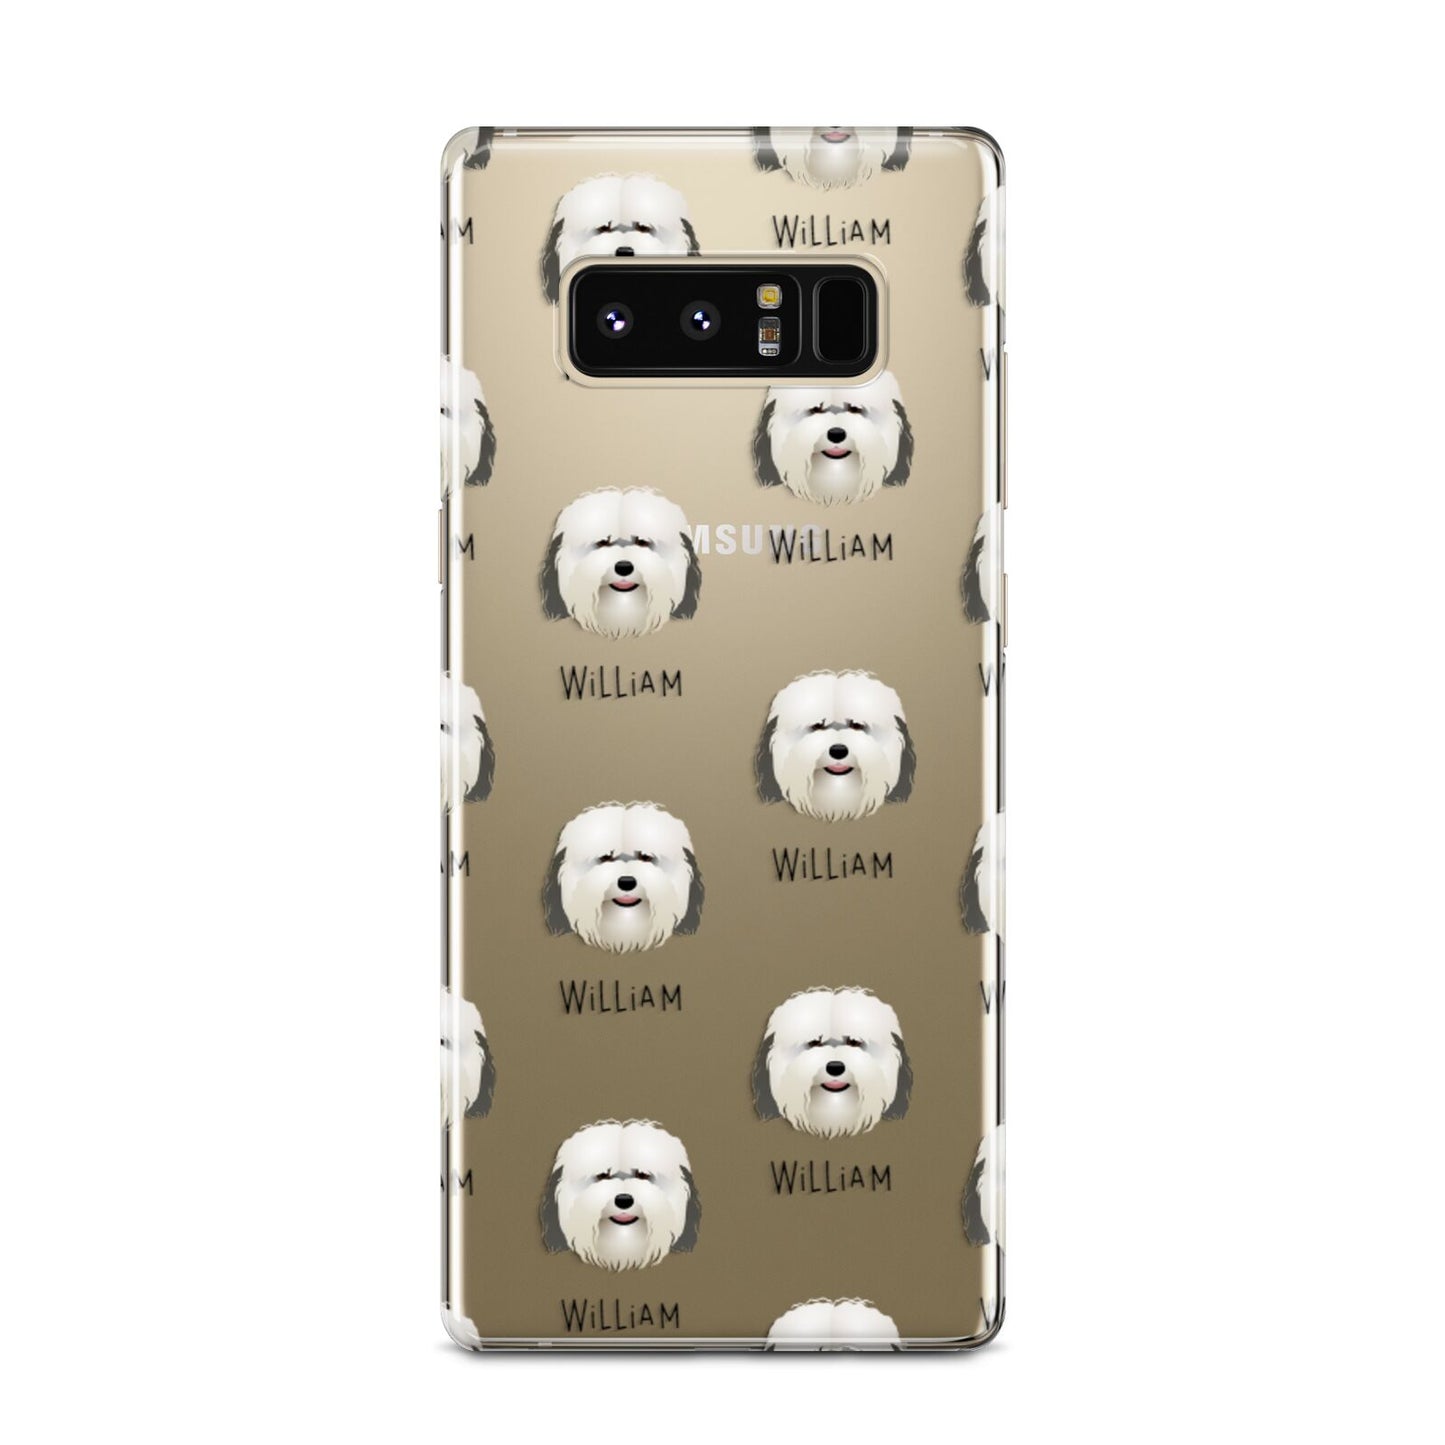 Coton De Tulear Icon with Name Samsung Galaxy Note 8 Case